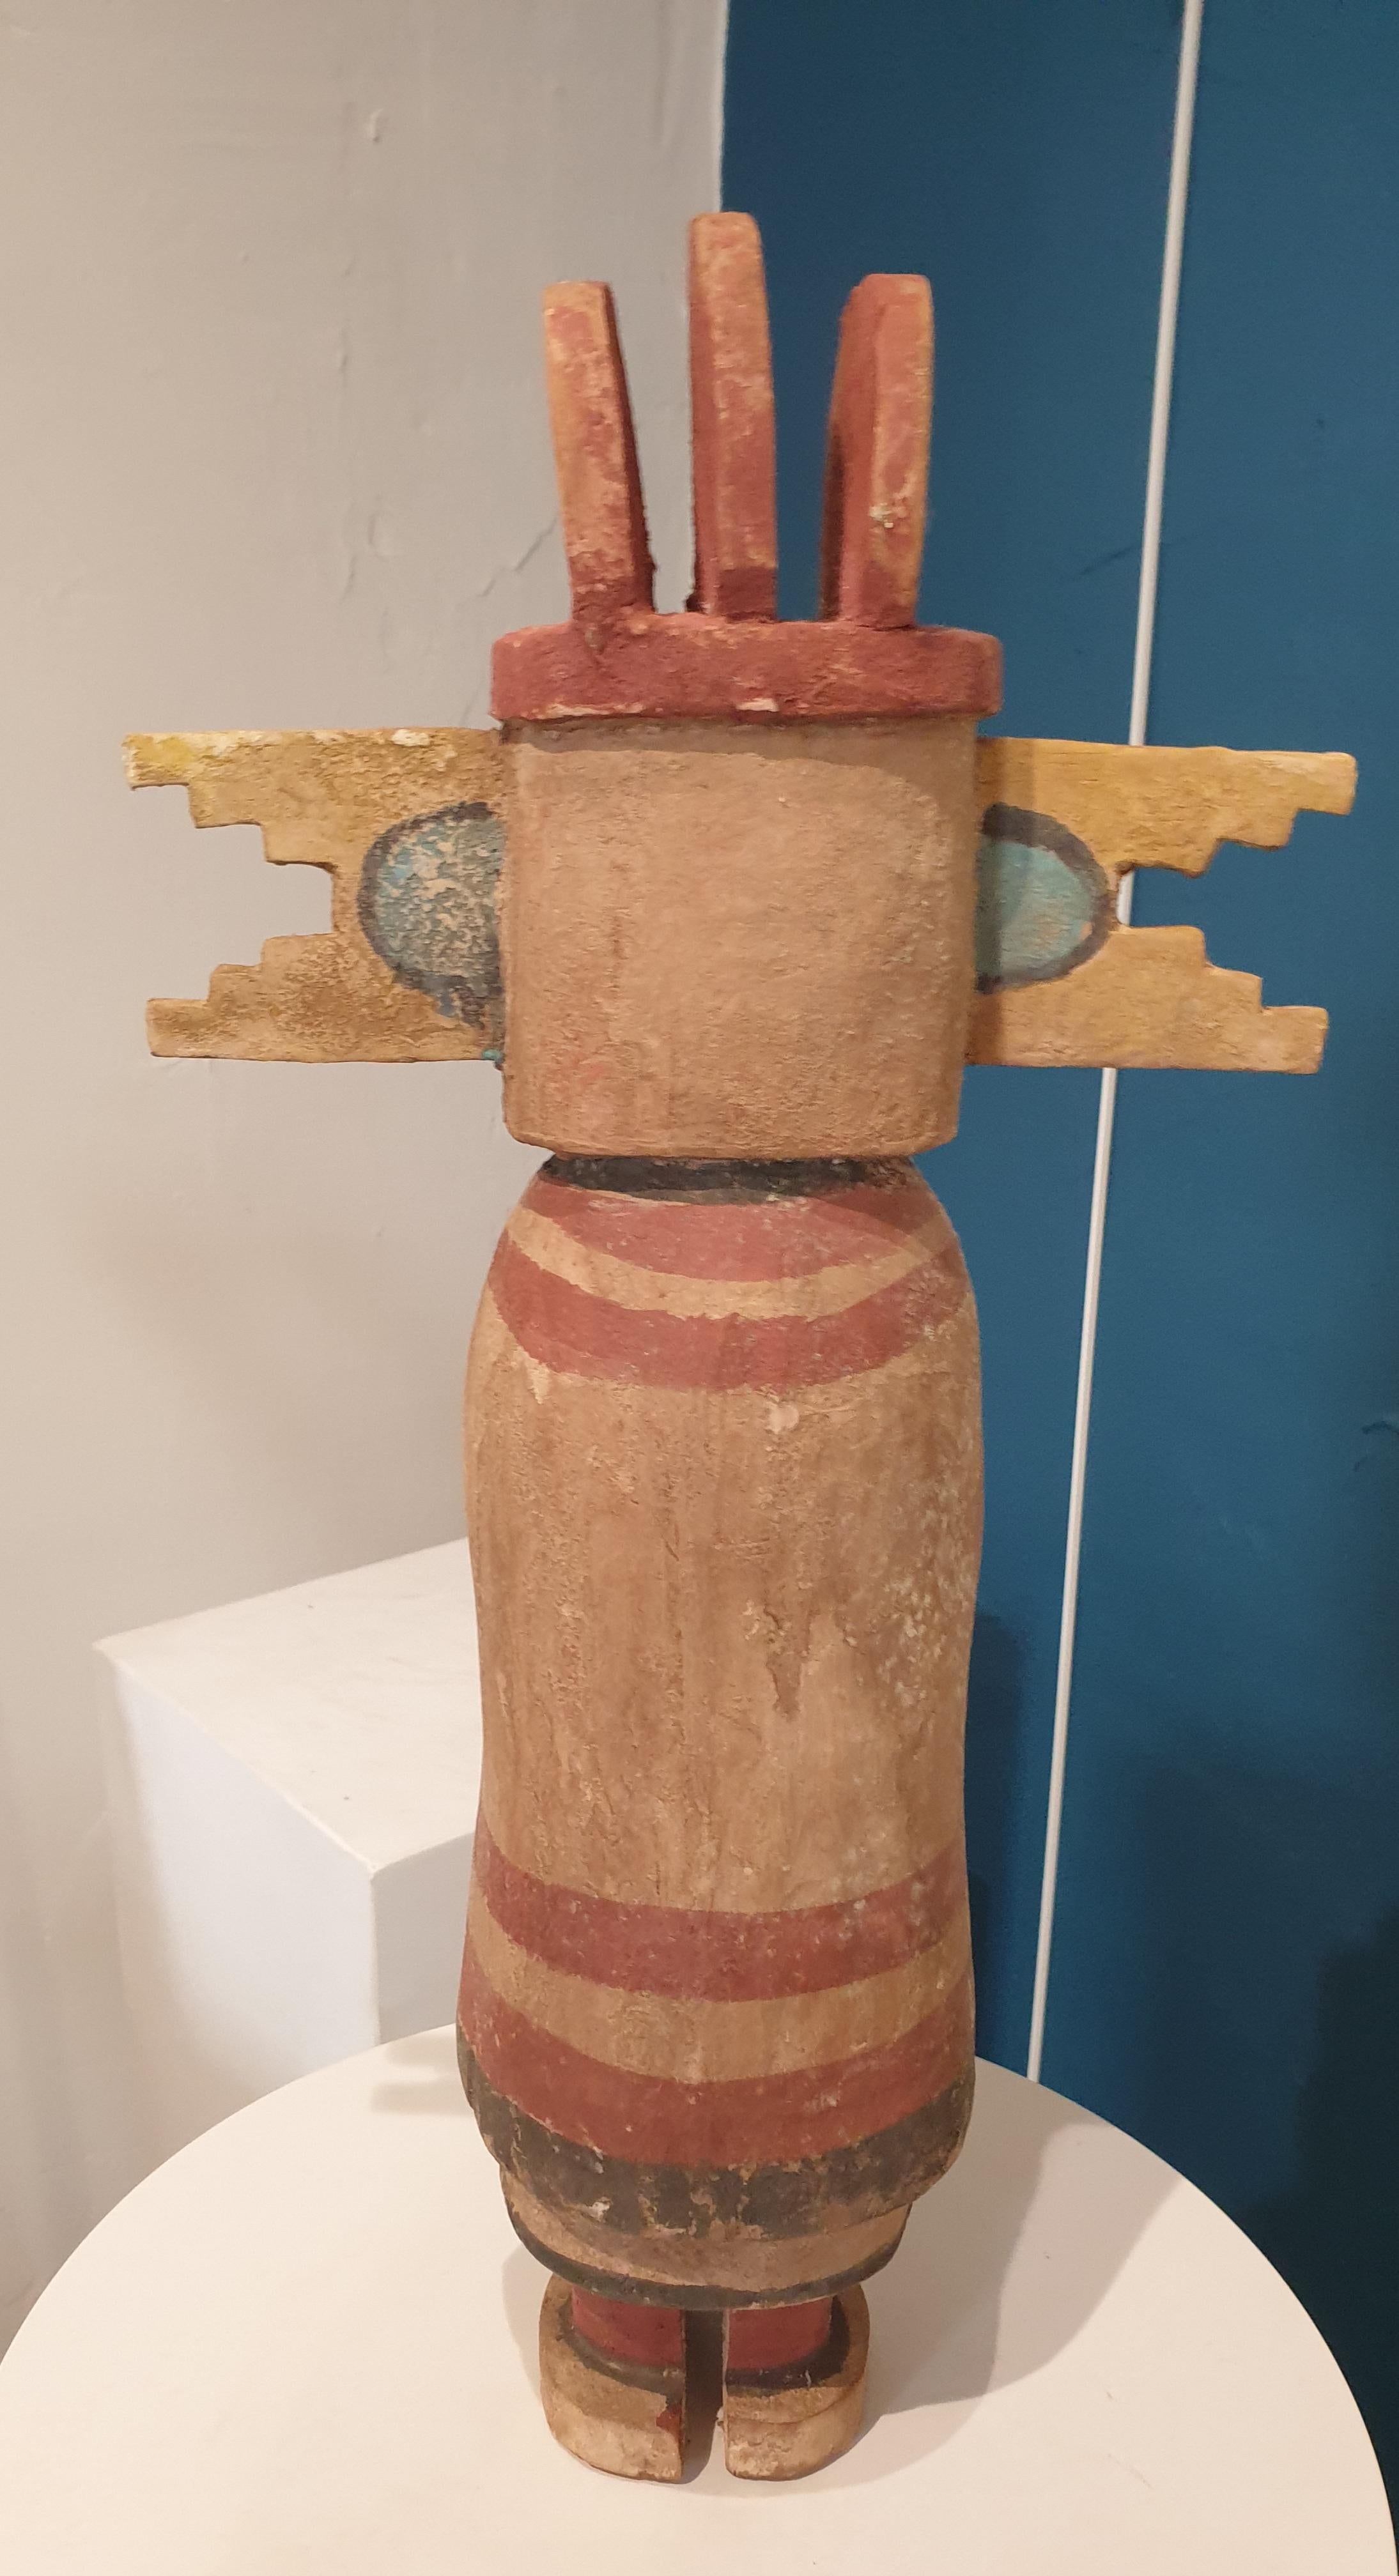 Aus Holz geschnitzte und bemalte Bildnisfigur der nordamerikanischen Ureinwohner, Hopi Katsina oder Kachina-Puppe. Eine aus einer Gruppe von acht Puppen, die alle auf 1stdibs erhältlich sind.

Hopi Katsina-Puppen sind hölzerne Abbilder der Katsinam